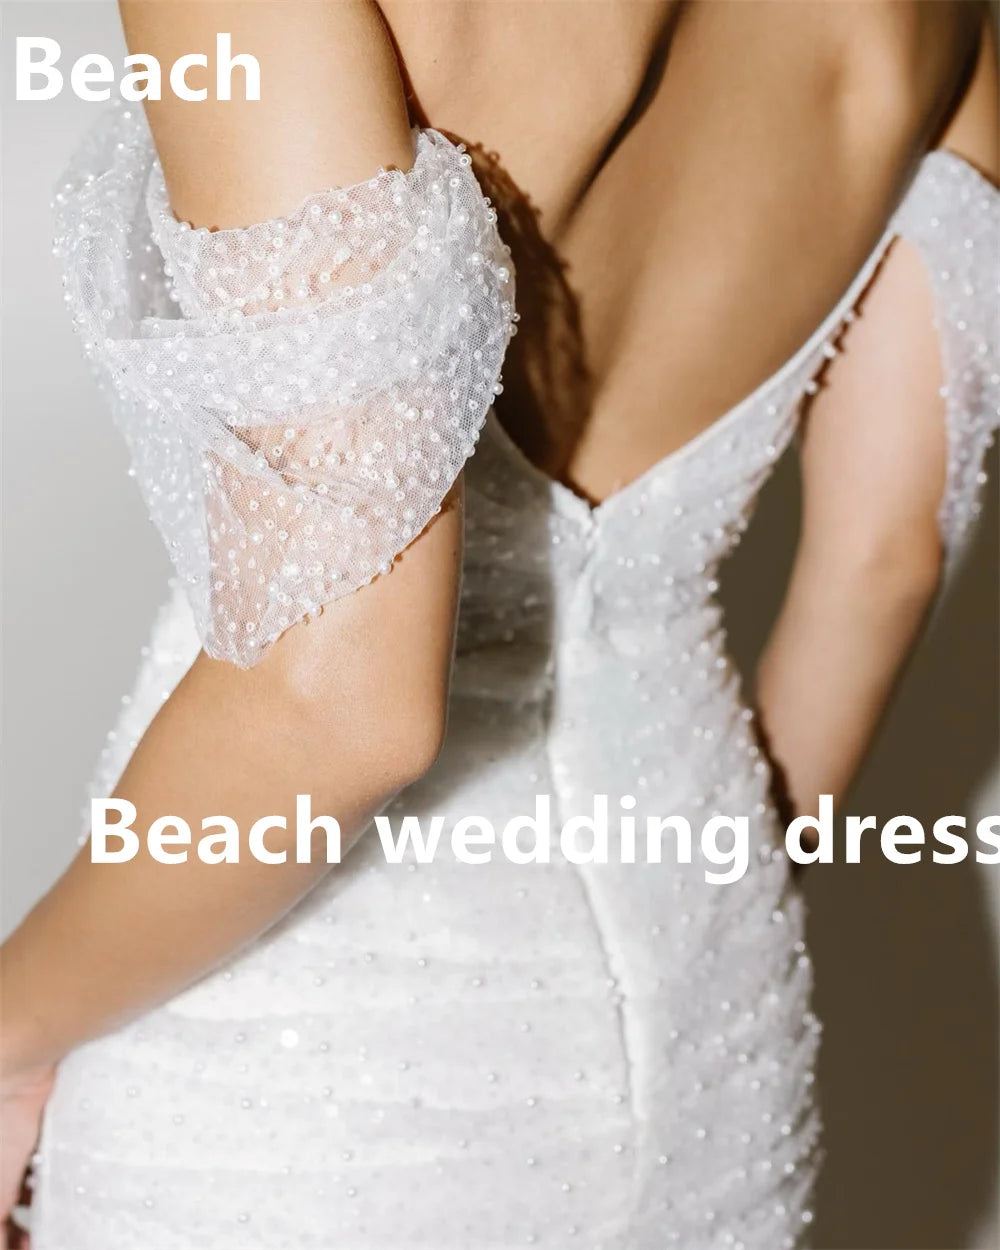 Plażowa mini ukochana krótkie suknie ślubne plażowe vestido noiva praia prosta biała a-liniowa impreza dla nowożeńców